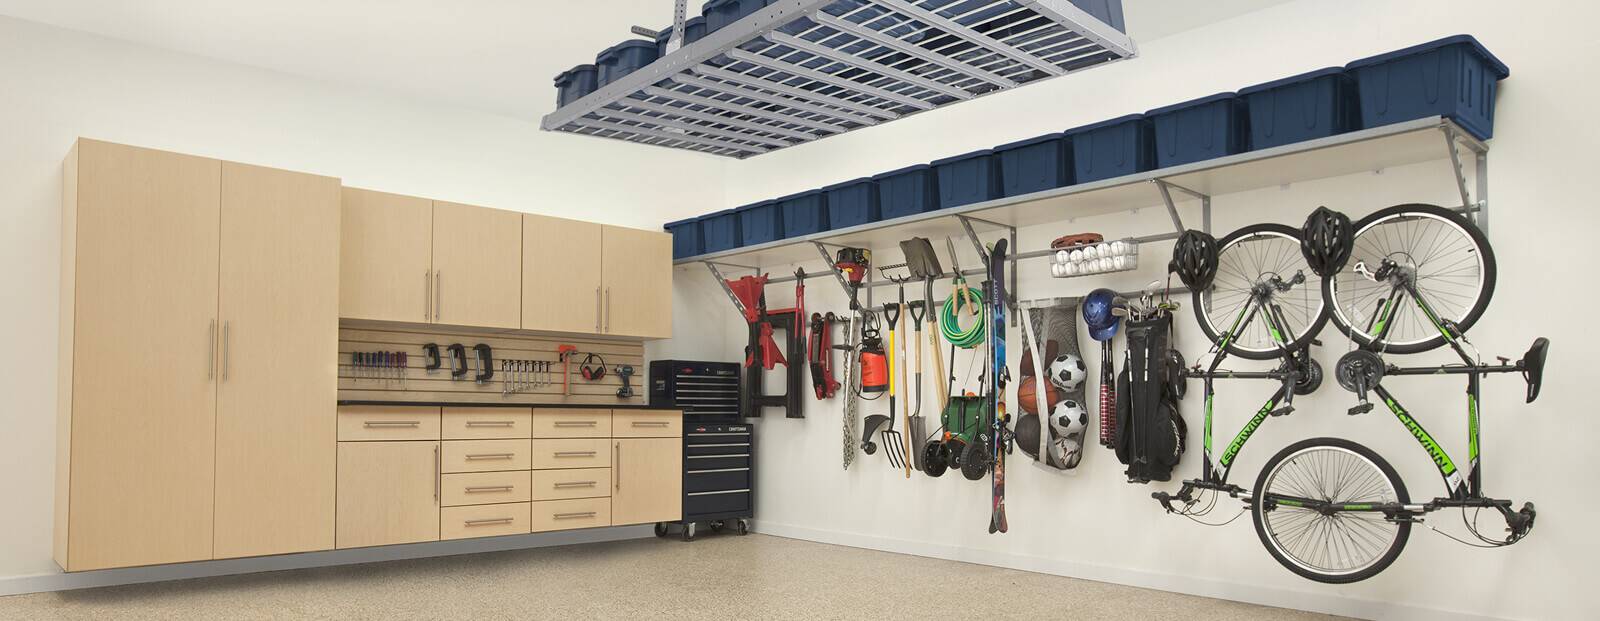 Garage Storage Dallas Flooring Cabinets Overhead Storage